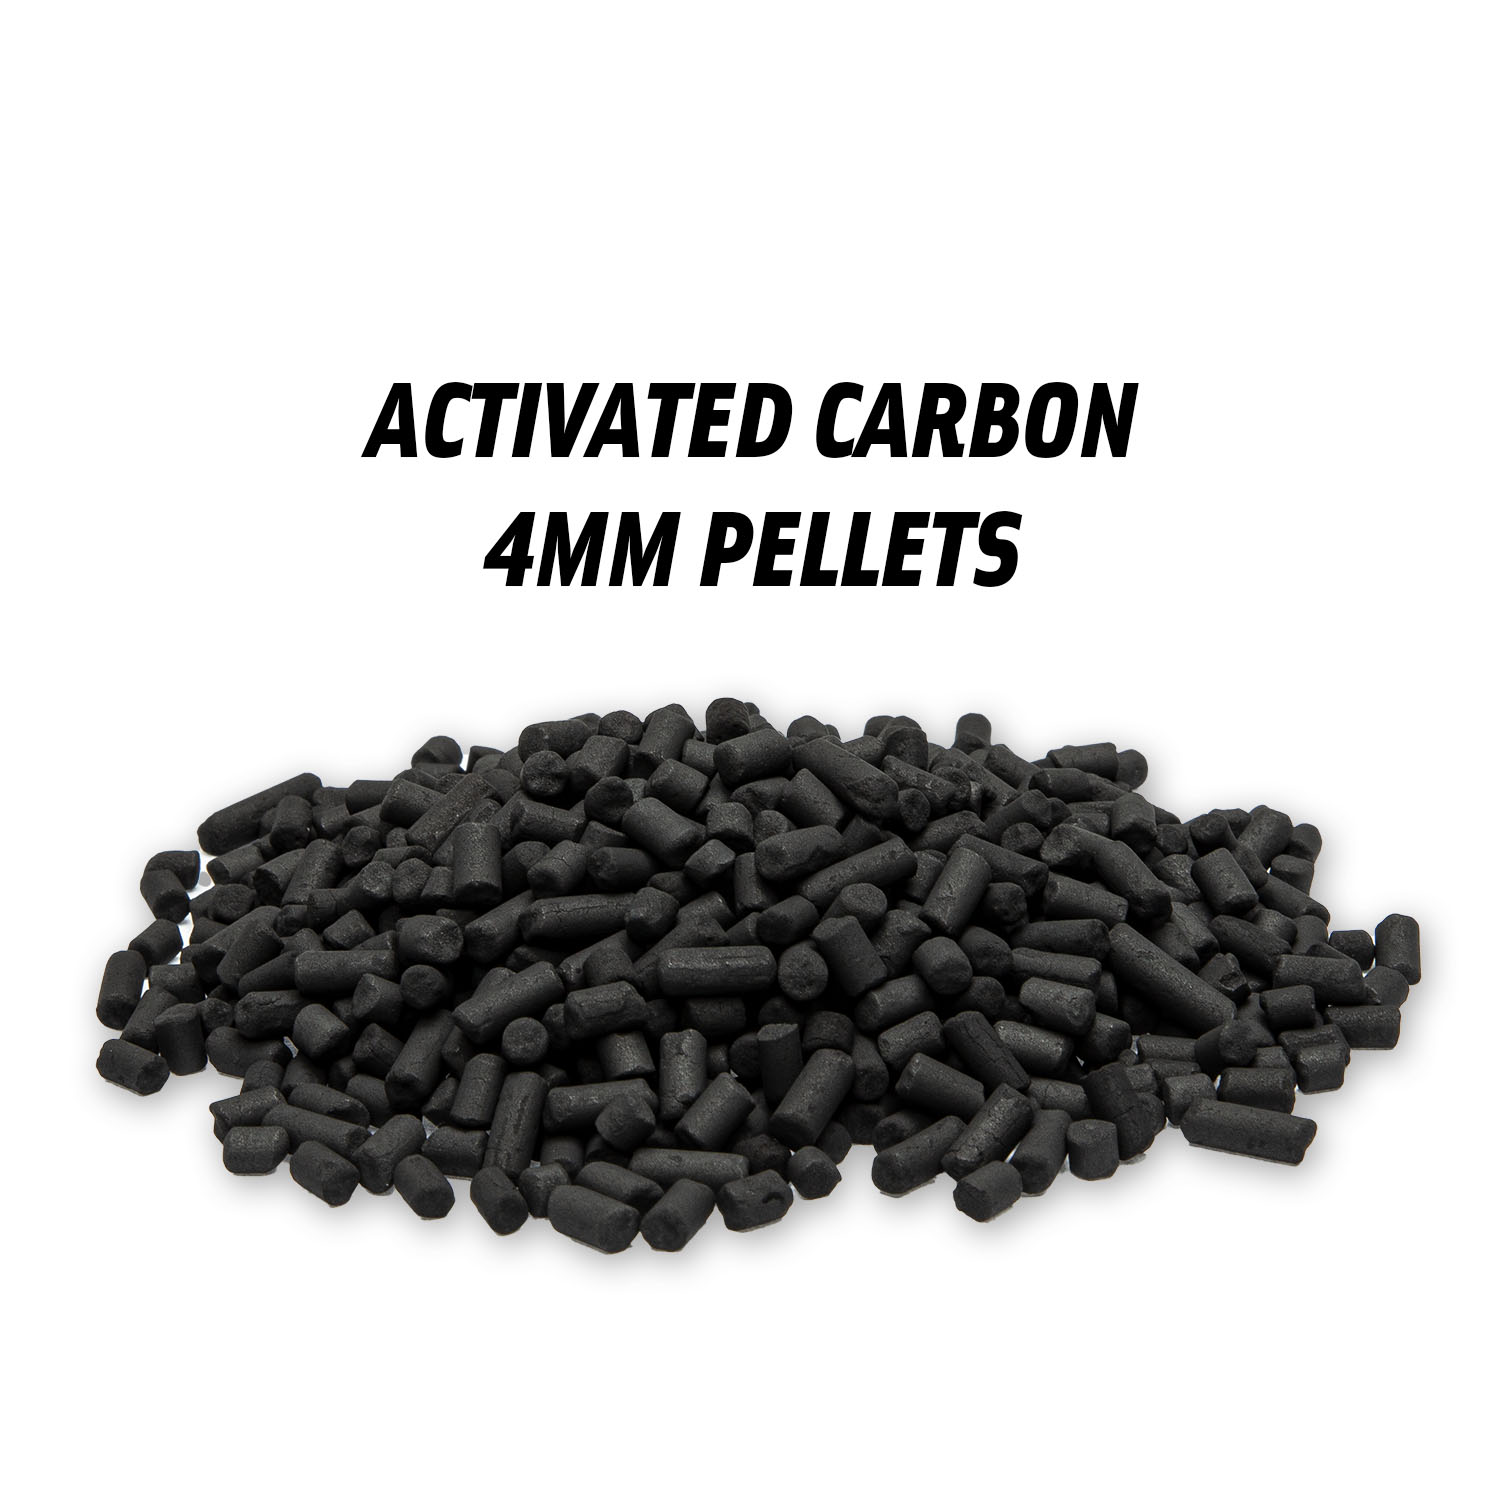 https://primaklima.com/wp-content/uploads/2022/01/k1804-4mm-activated-carbon.jpg